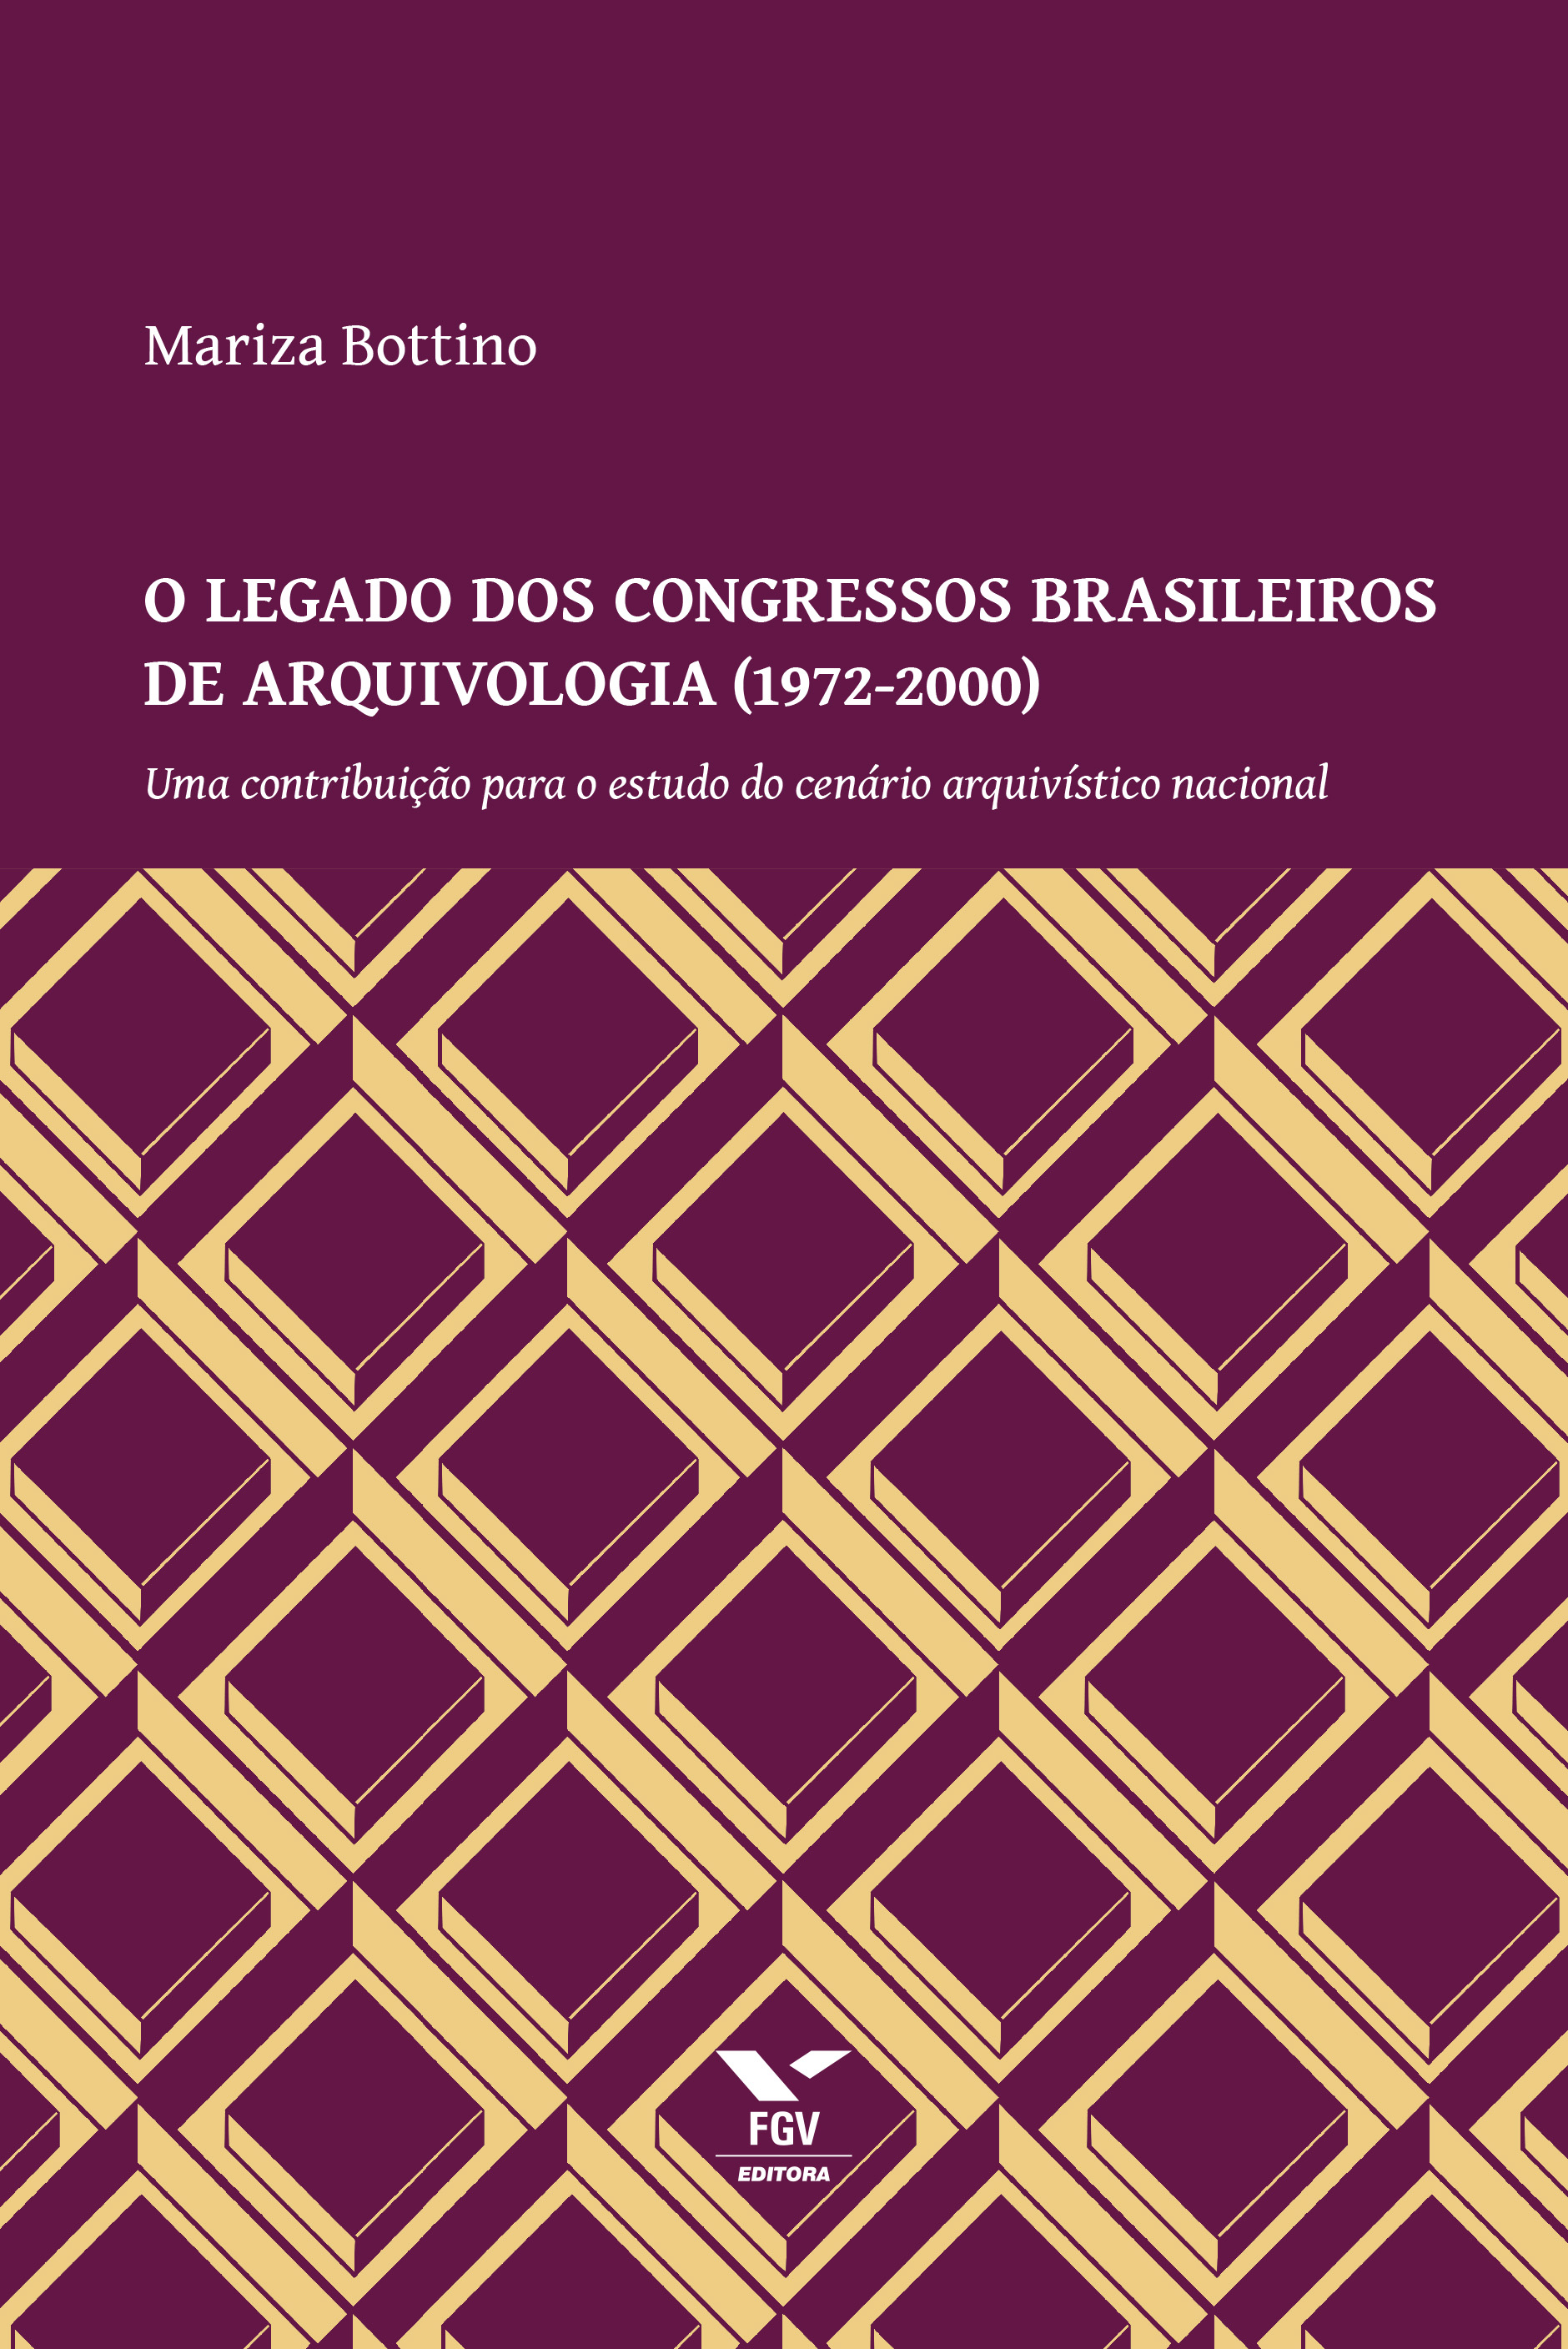 Capa-Congressos Brasileiros de Arquivologia.indd